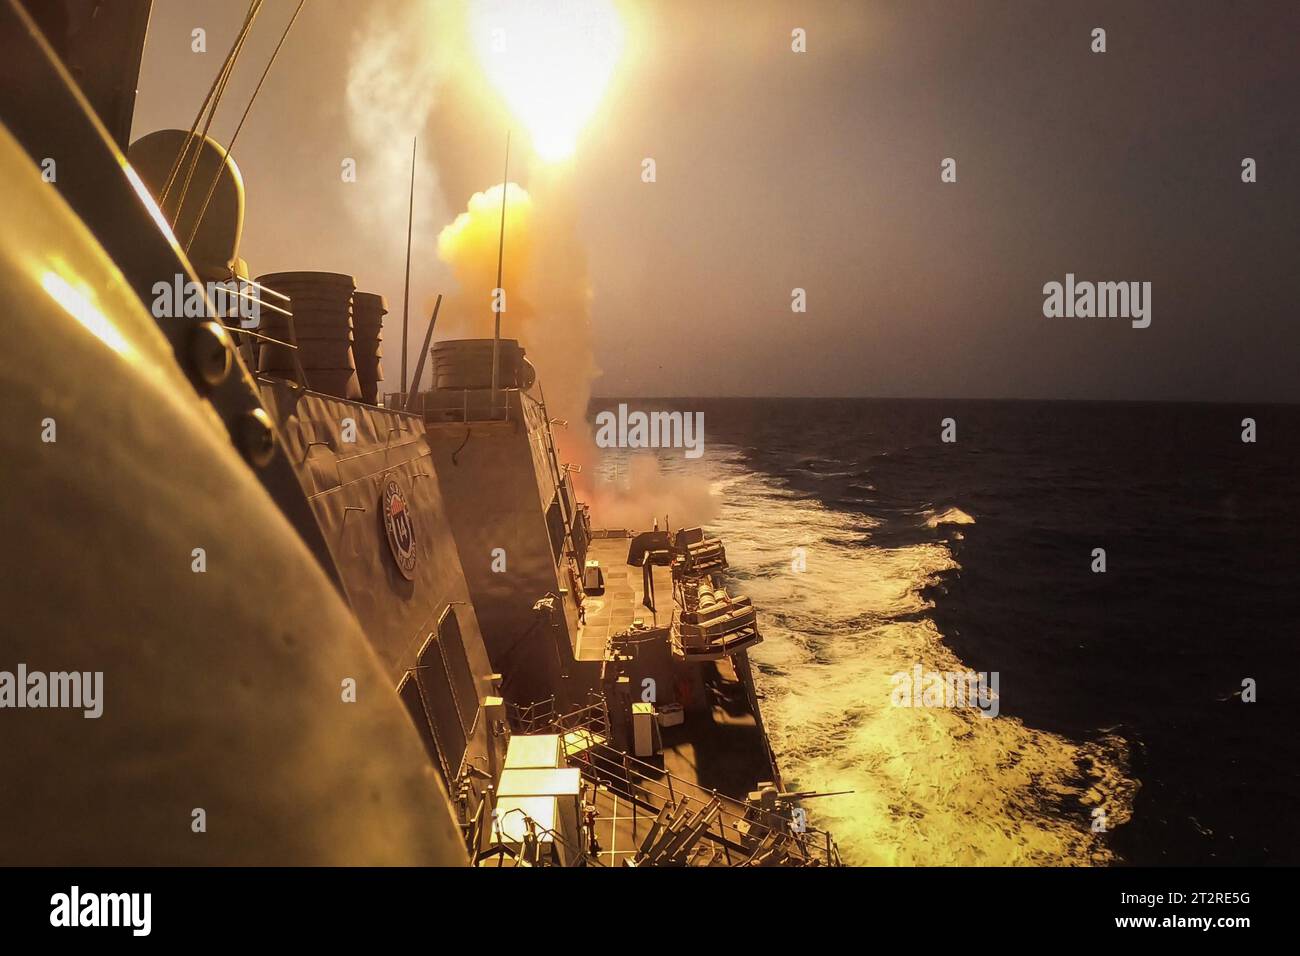 Il cacciatorpediniere a missili guidati classe Arleigh Burke USS Carney (DDG 64) sconfigge una combinazione di missili Houthi e veicoli aerei senza equipaggio nel Mar Rosso, il 19 ottobre 2023. Carney è dispiegato nell'area operativa della 5th Fleet degli Stati Uniti per contribuire a garantire la sicurezza marittima e la stabilità nella regione del Medio Oriente. Foto di MC2 Aaron Lau/U.S. Navy/UPI Credit: UPI/Alamy Live News Foto Stock